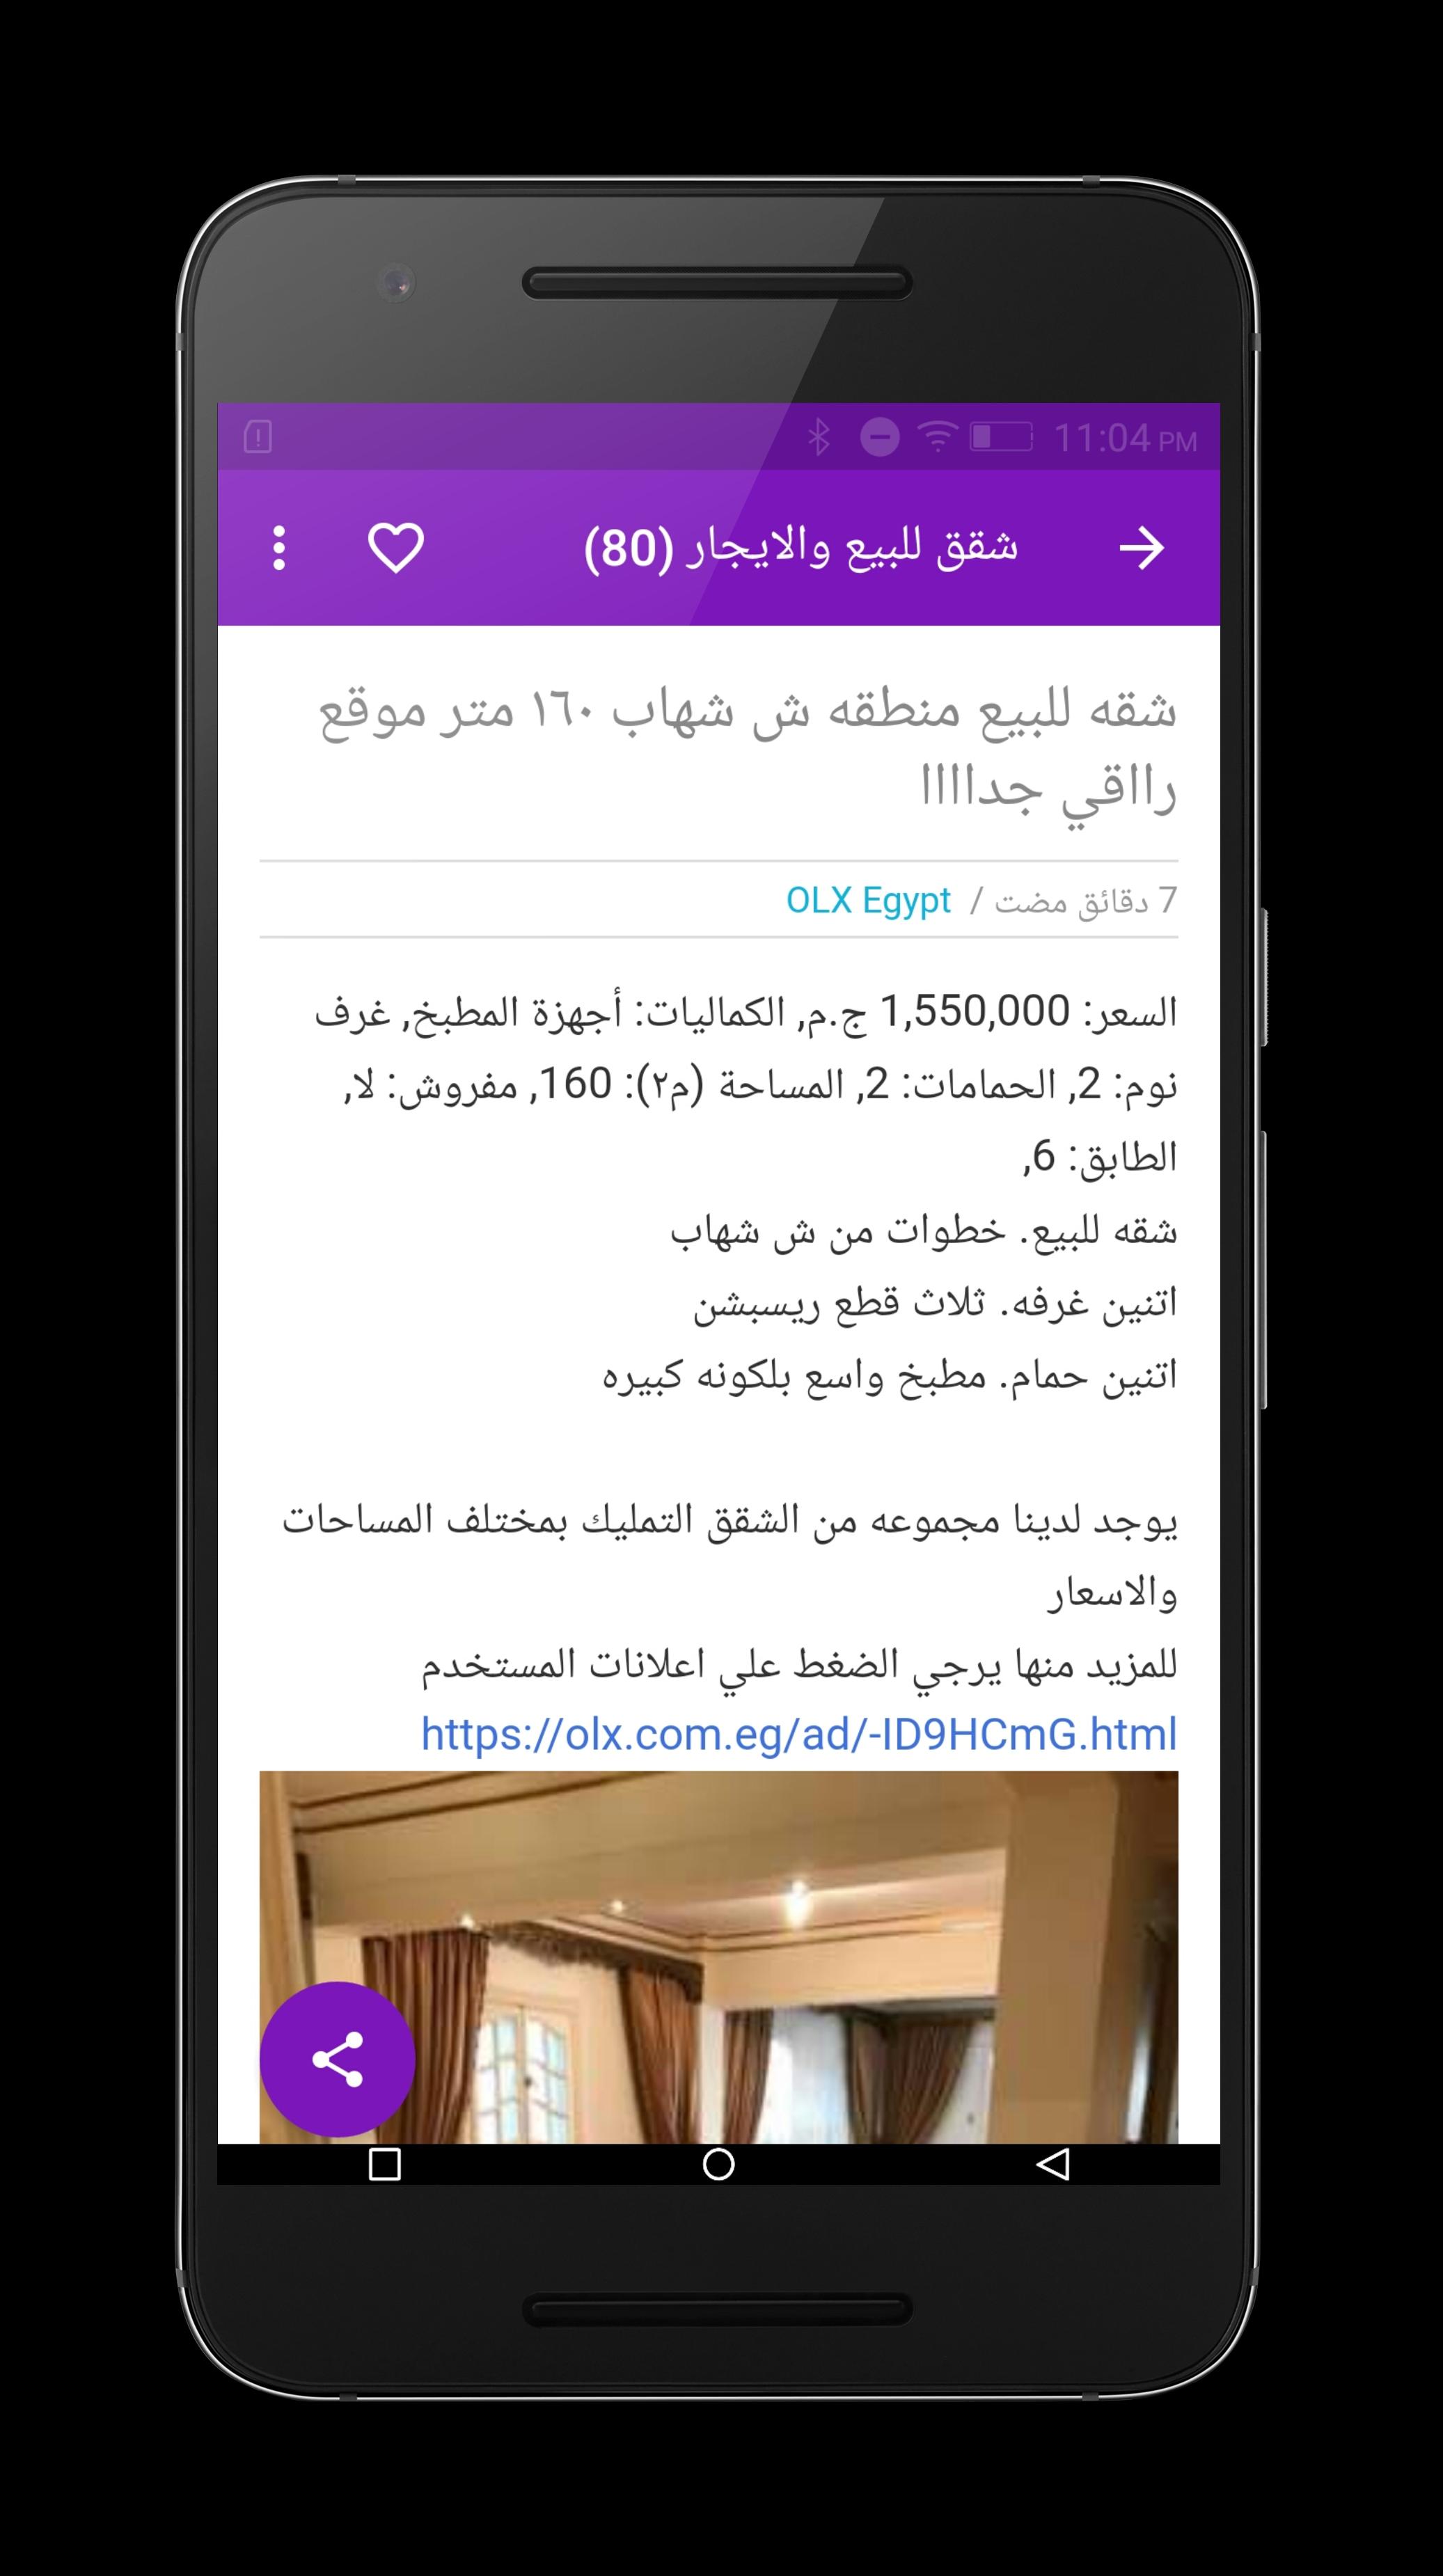 شقق للبيع والإيجار في مصر For Android Apk Download